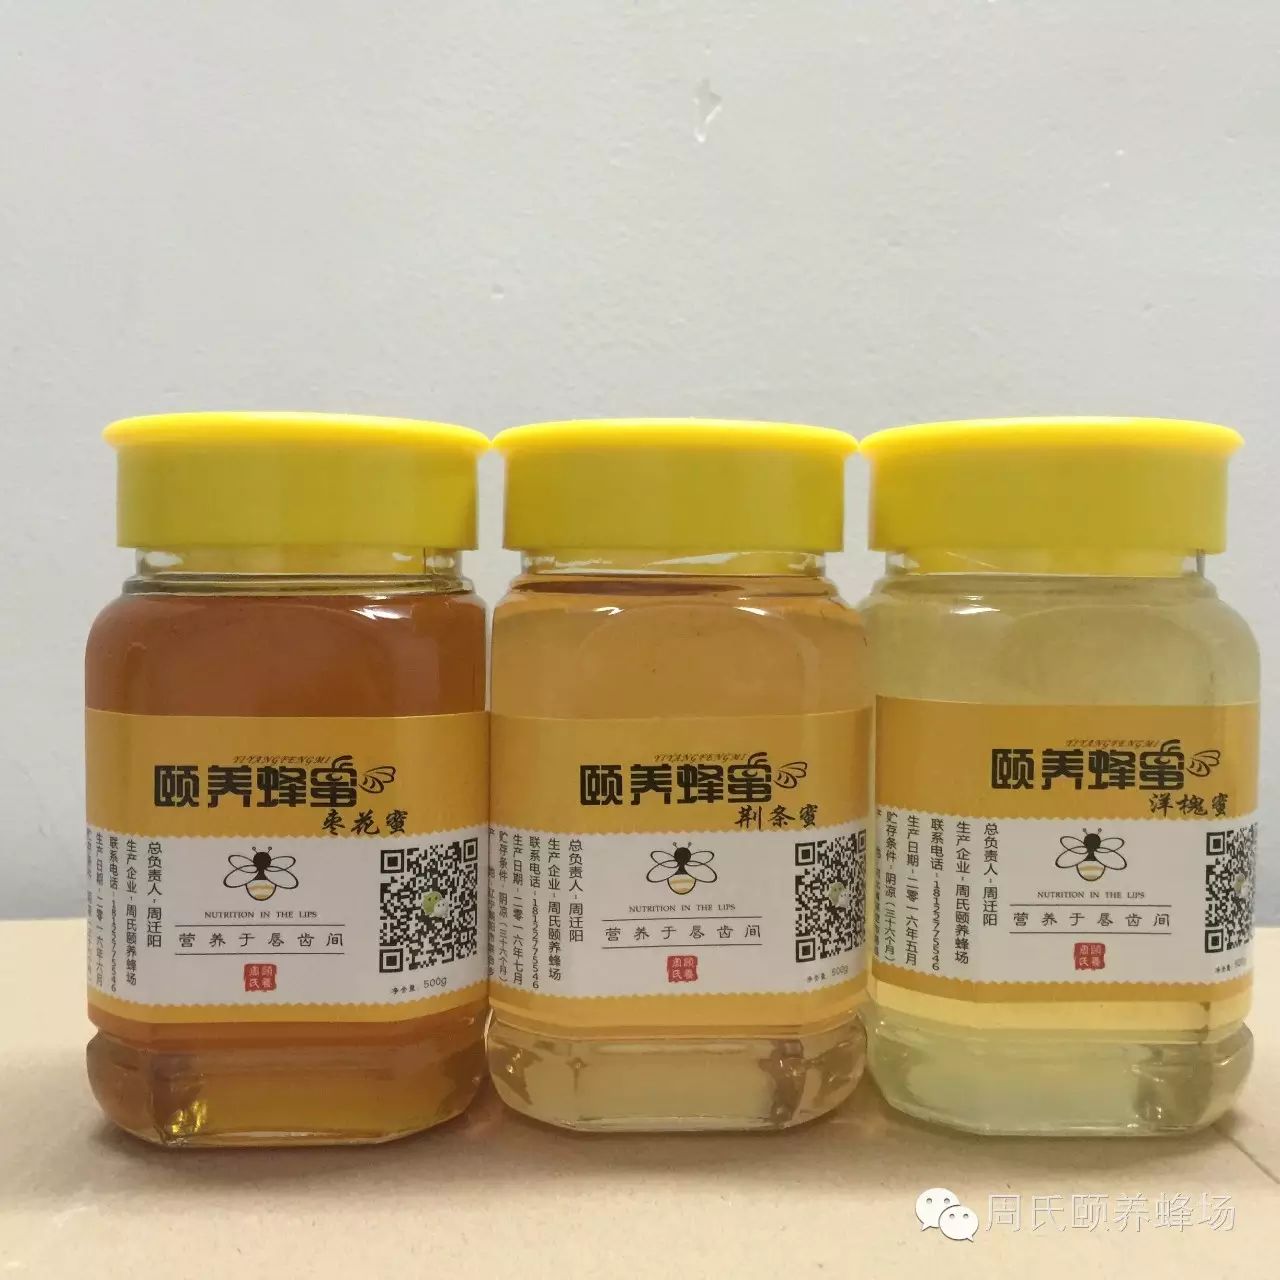 柠檬蜂蜜宫寒 四川巴中蜂蜜 吃完蜂蜜多久能吃豆腐 蜂蜜可以治咽炎吗 喝蜂蜜水对宝宝有影响吗